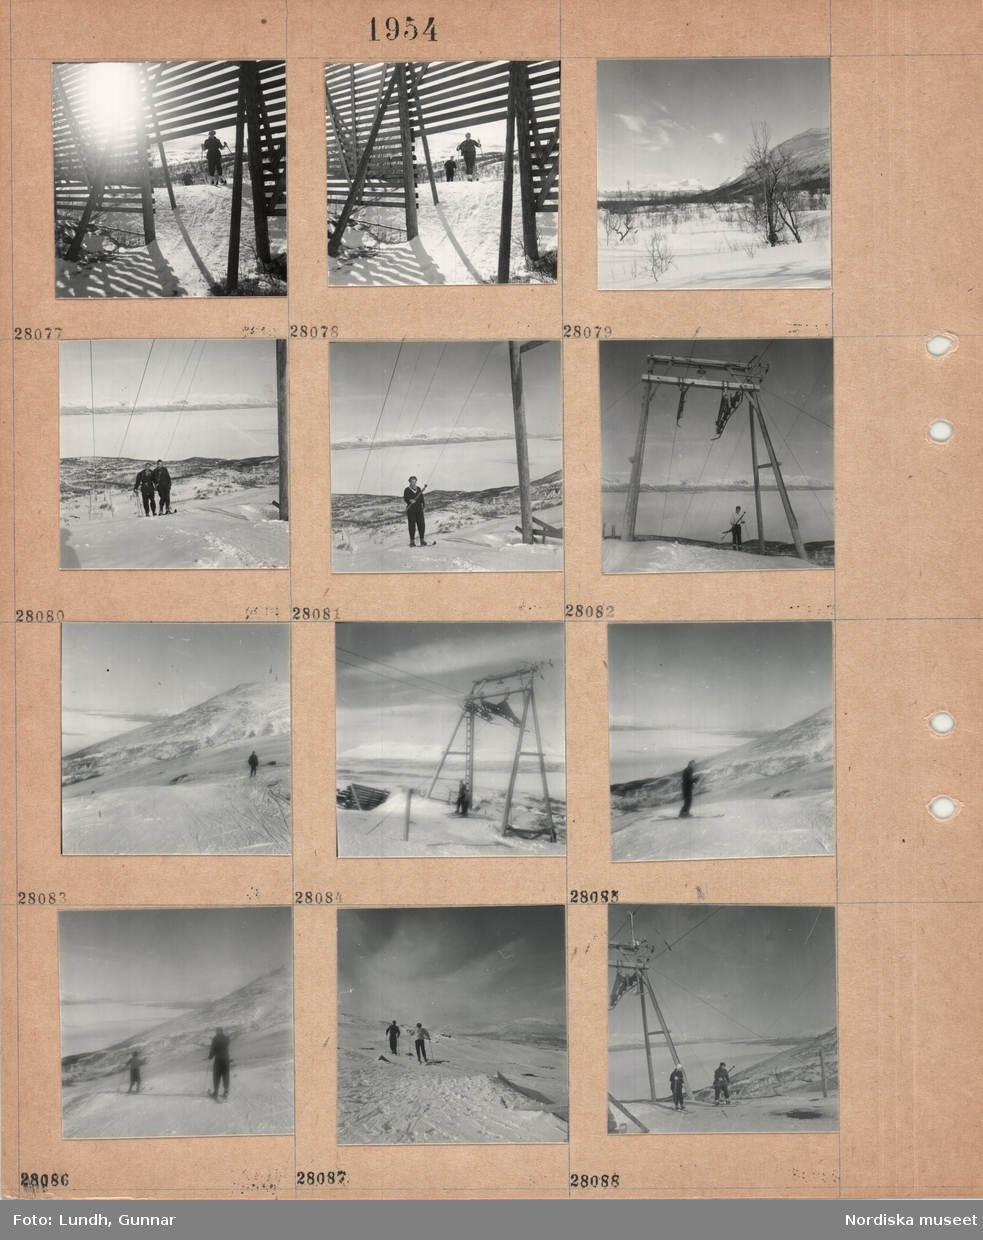 Motiv: (ingen anteckning) (Abisko) ;
Ett snöstaket med skidåkare i bakgrunden, en snötäckt landskapsvy med skog och fjäll, två personer åker i en lift - en släplift, två personer åker skidor på ett fjäll.